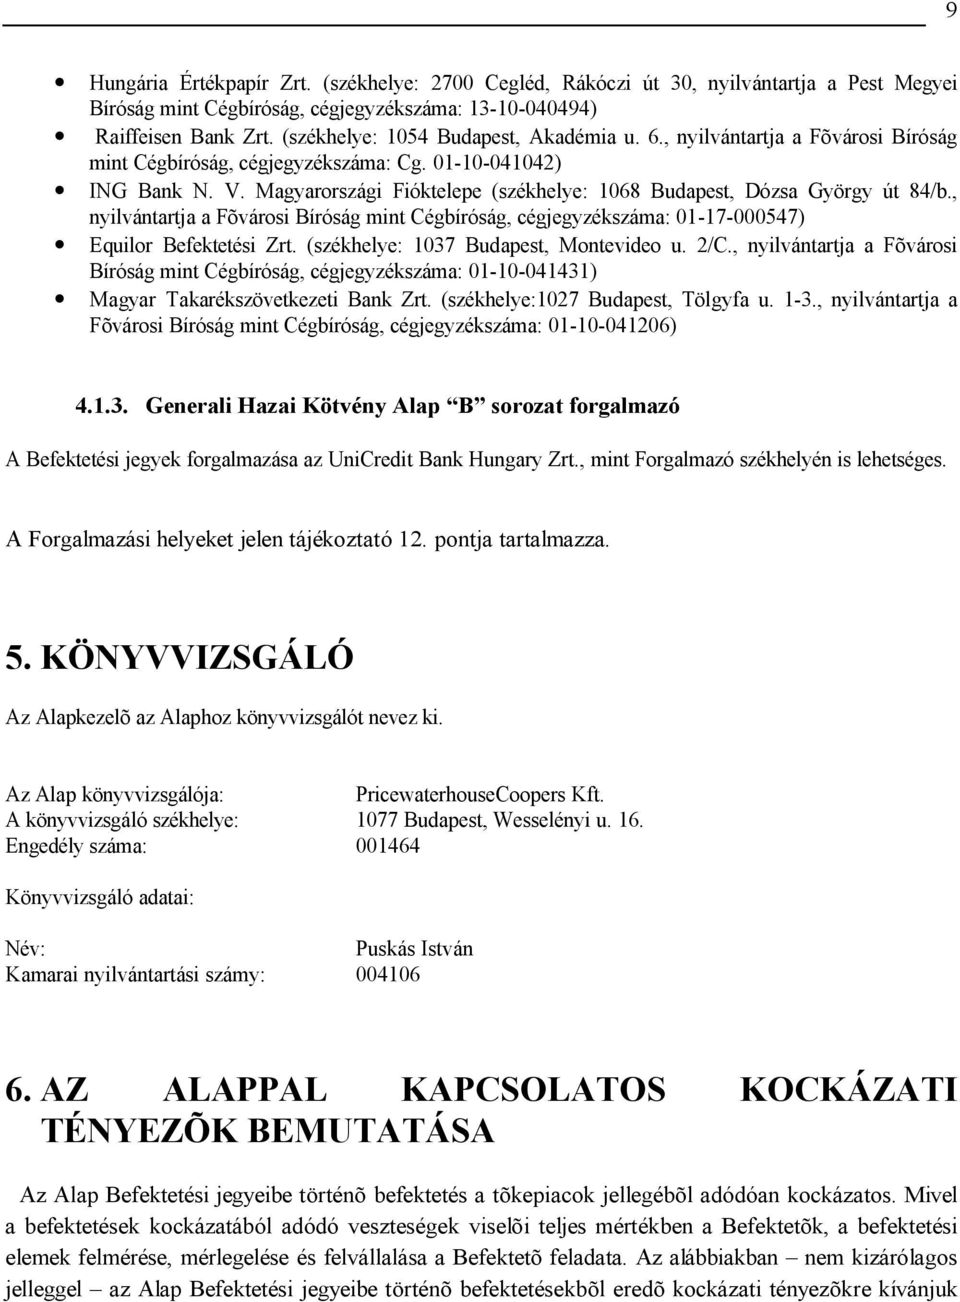 Magyarországi Fióktelepe (székhelye: 1068 Budapest, Dózsa György út 84/b., nyilvántartja a Fõvárosi Bíróság mint Cégbíróság, cégjegyzékszáma: 01-17-000547) Equilor Befektetési Zrt.